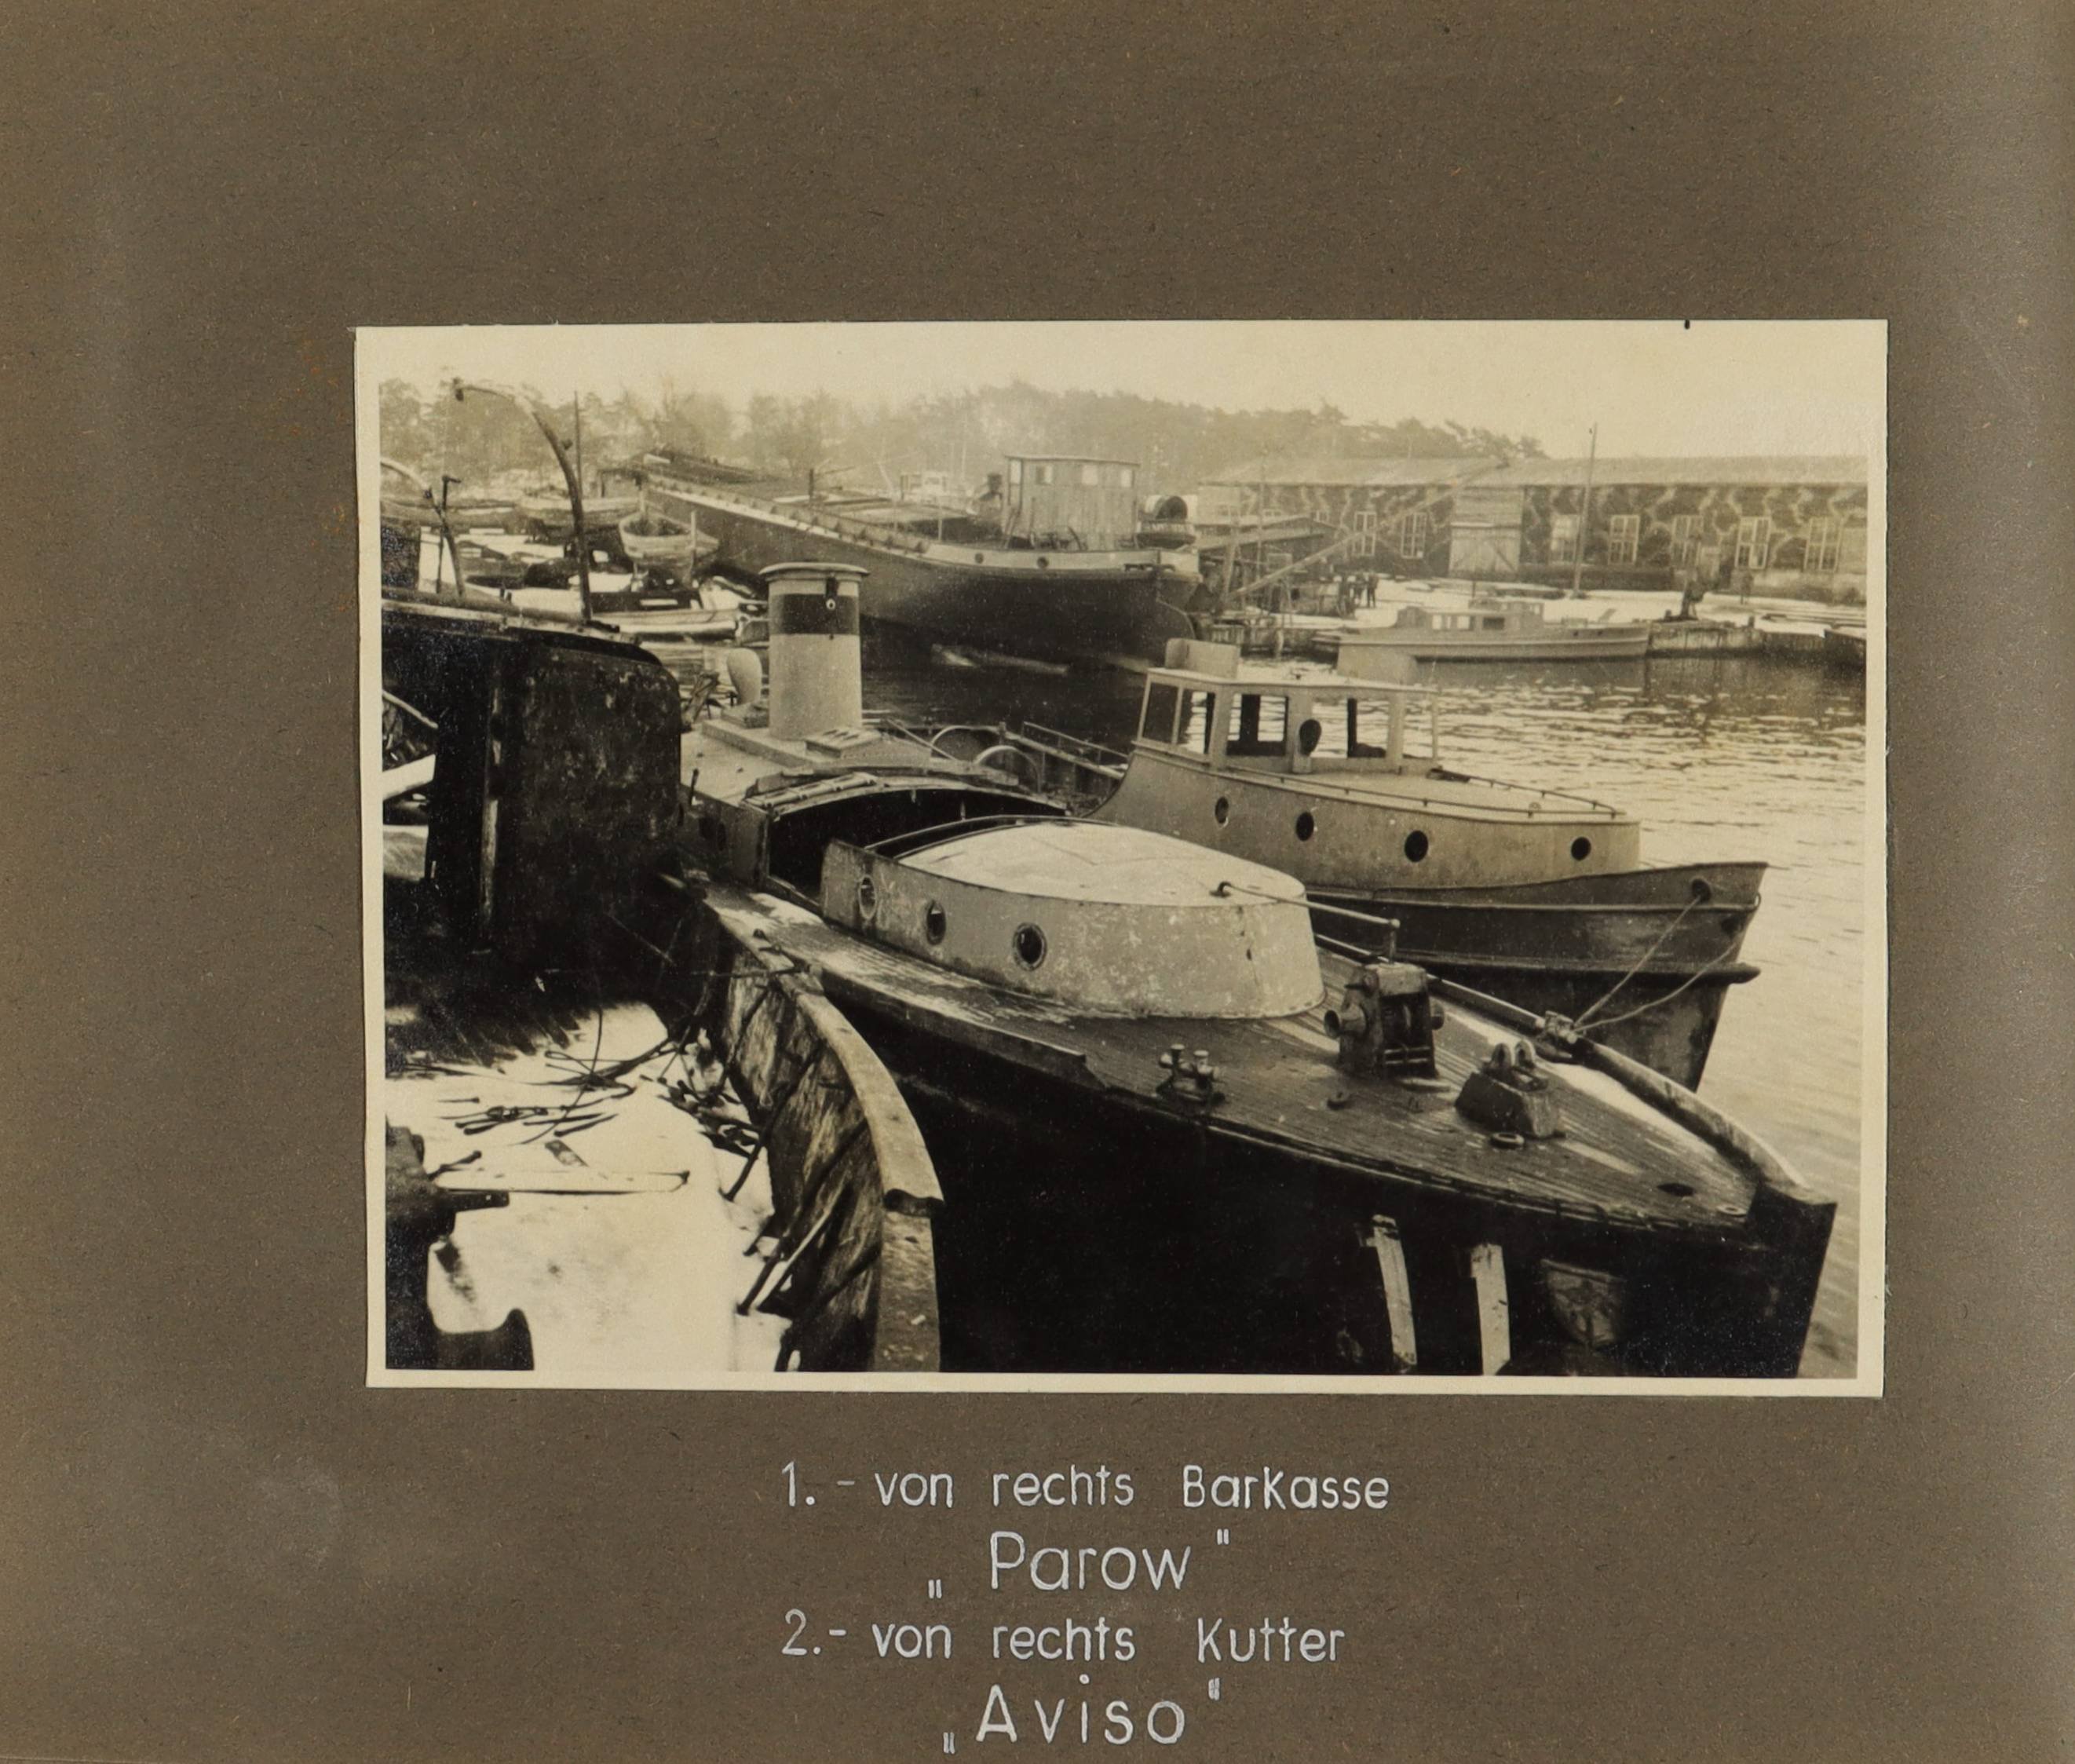 Die Barkasse "Parow" (vorne r.), der Kutter "Aviso" (vorne m.) und weitere Schiffe (Schiffbau- und Schiffahrtsmuseum Rostock RR-F)